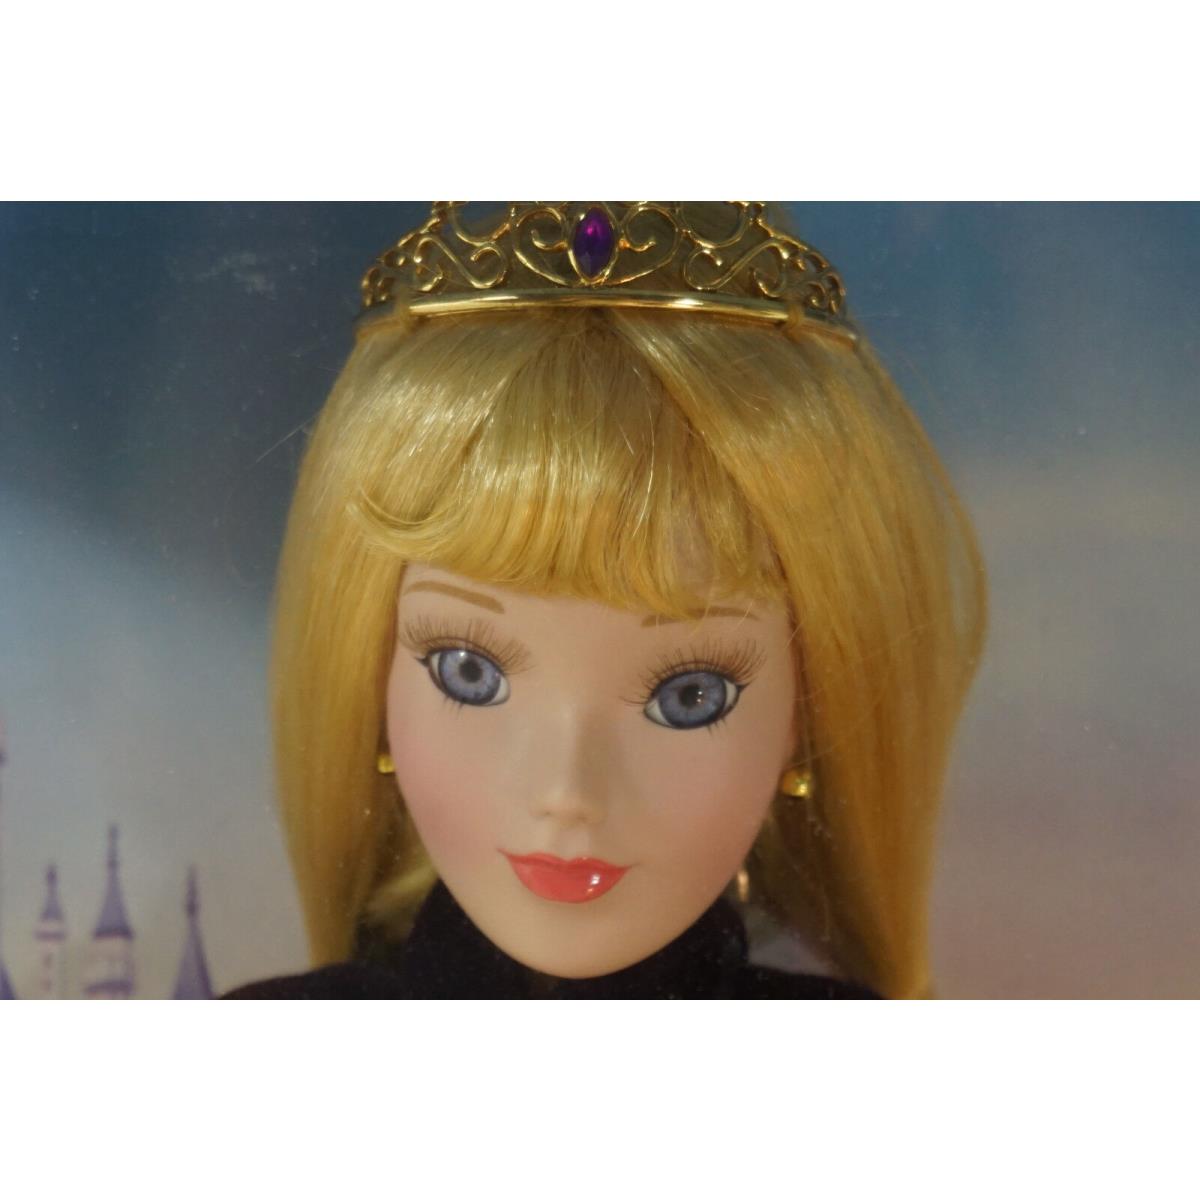 Disney Princess Doll Sleeping Beauty Aurora Brass Key 16in Tall Jewel Mib Nrfb